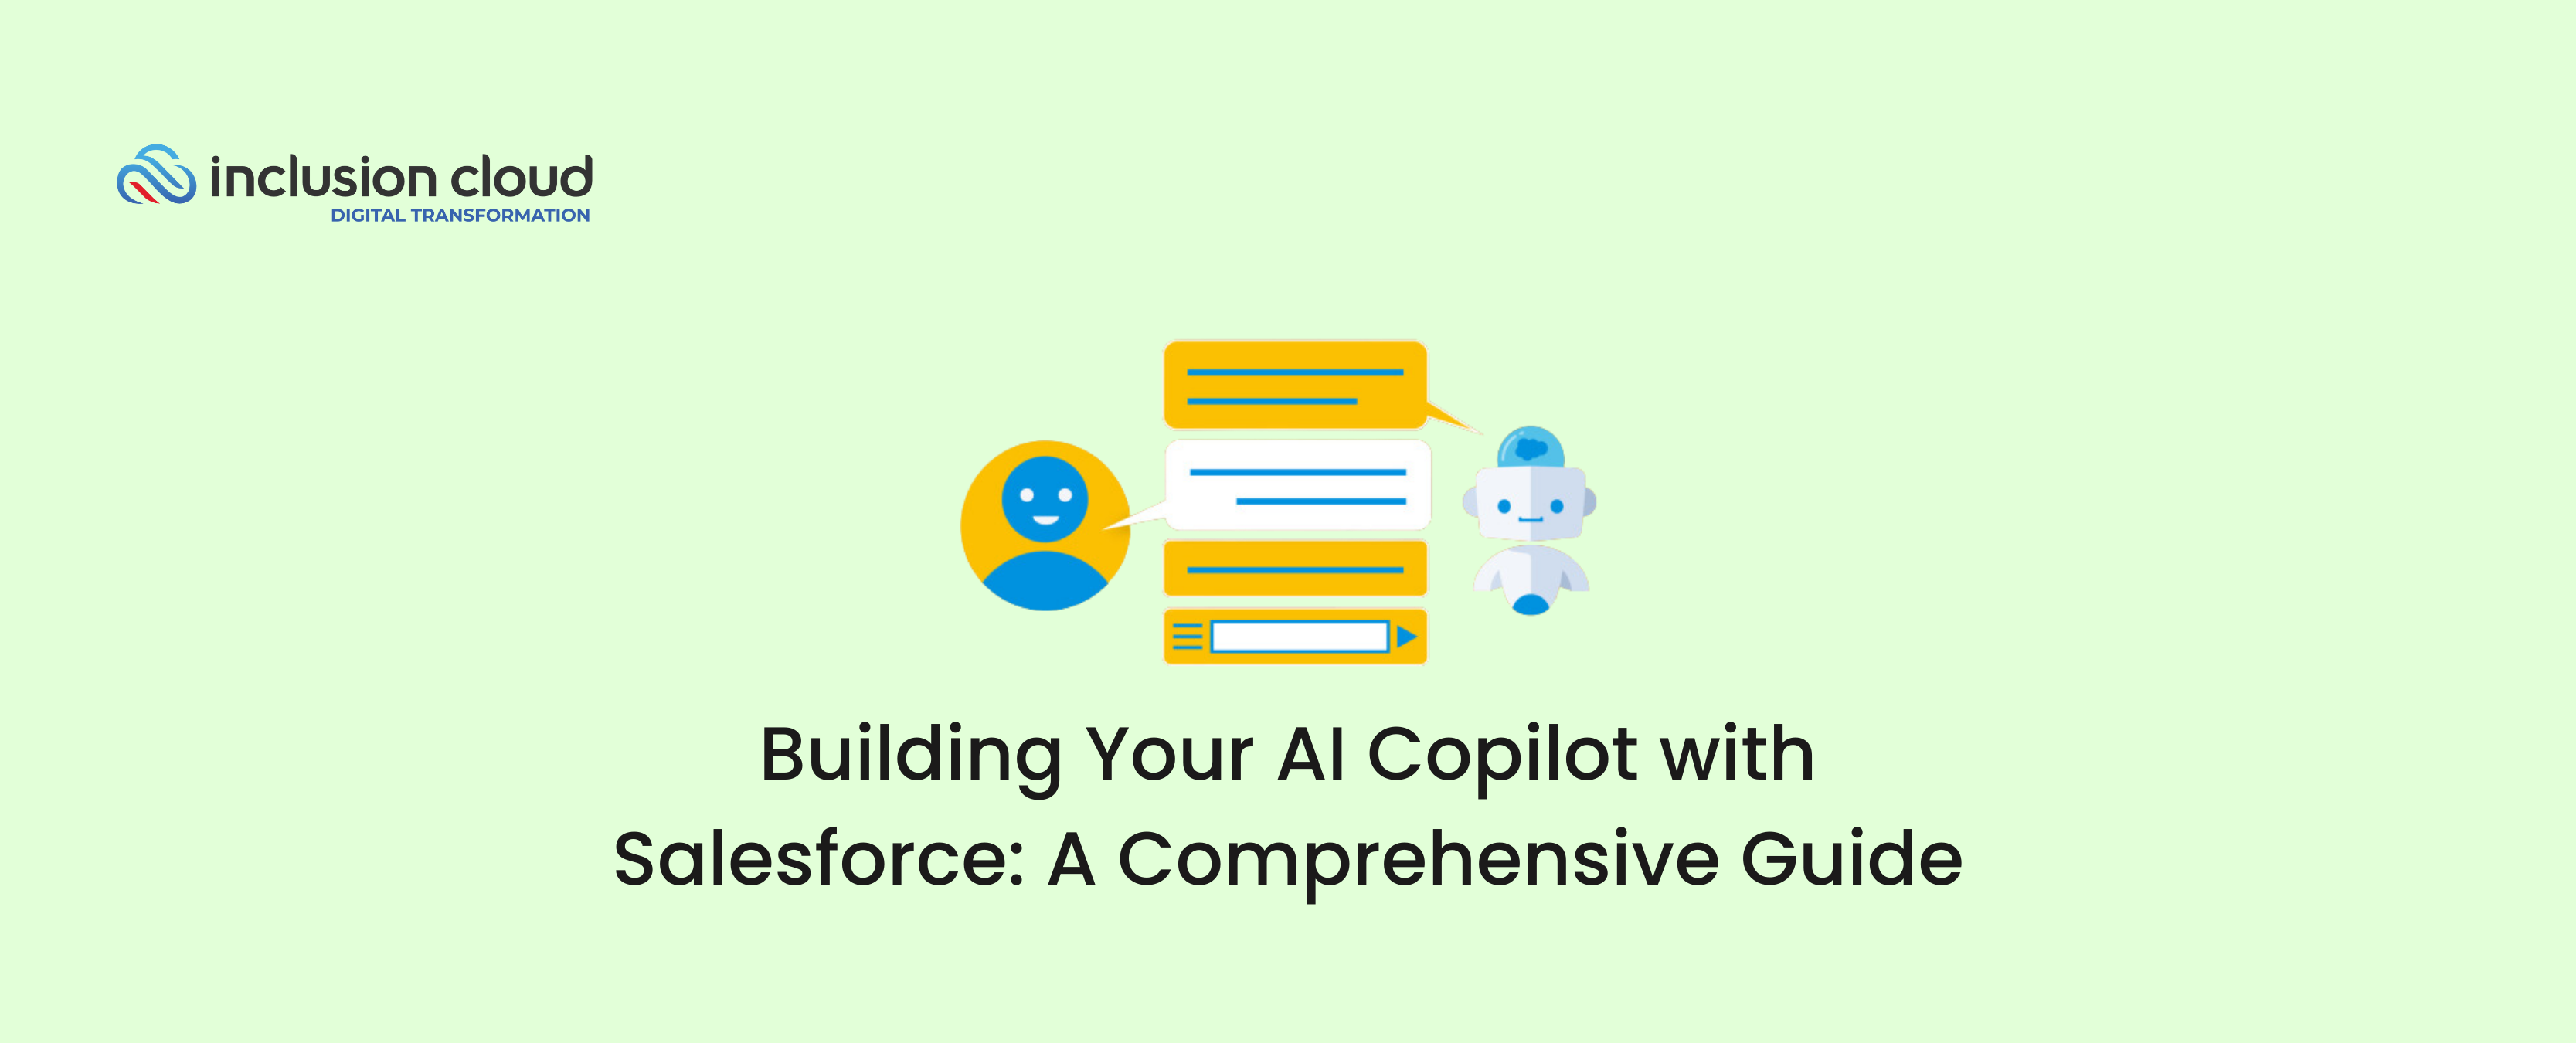 Building your AI Copilot with Salesforce.